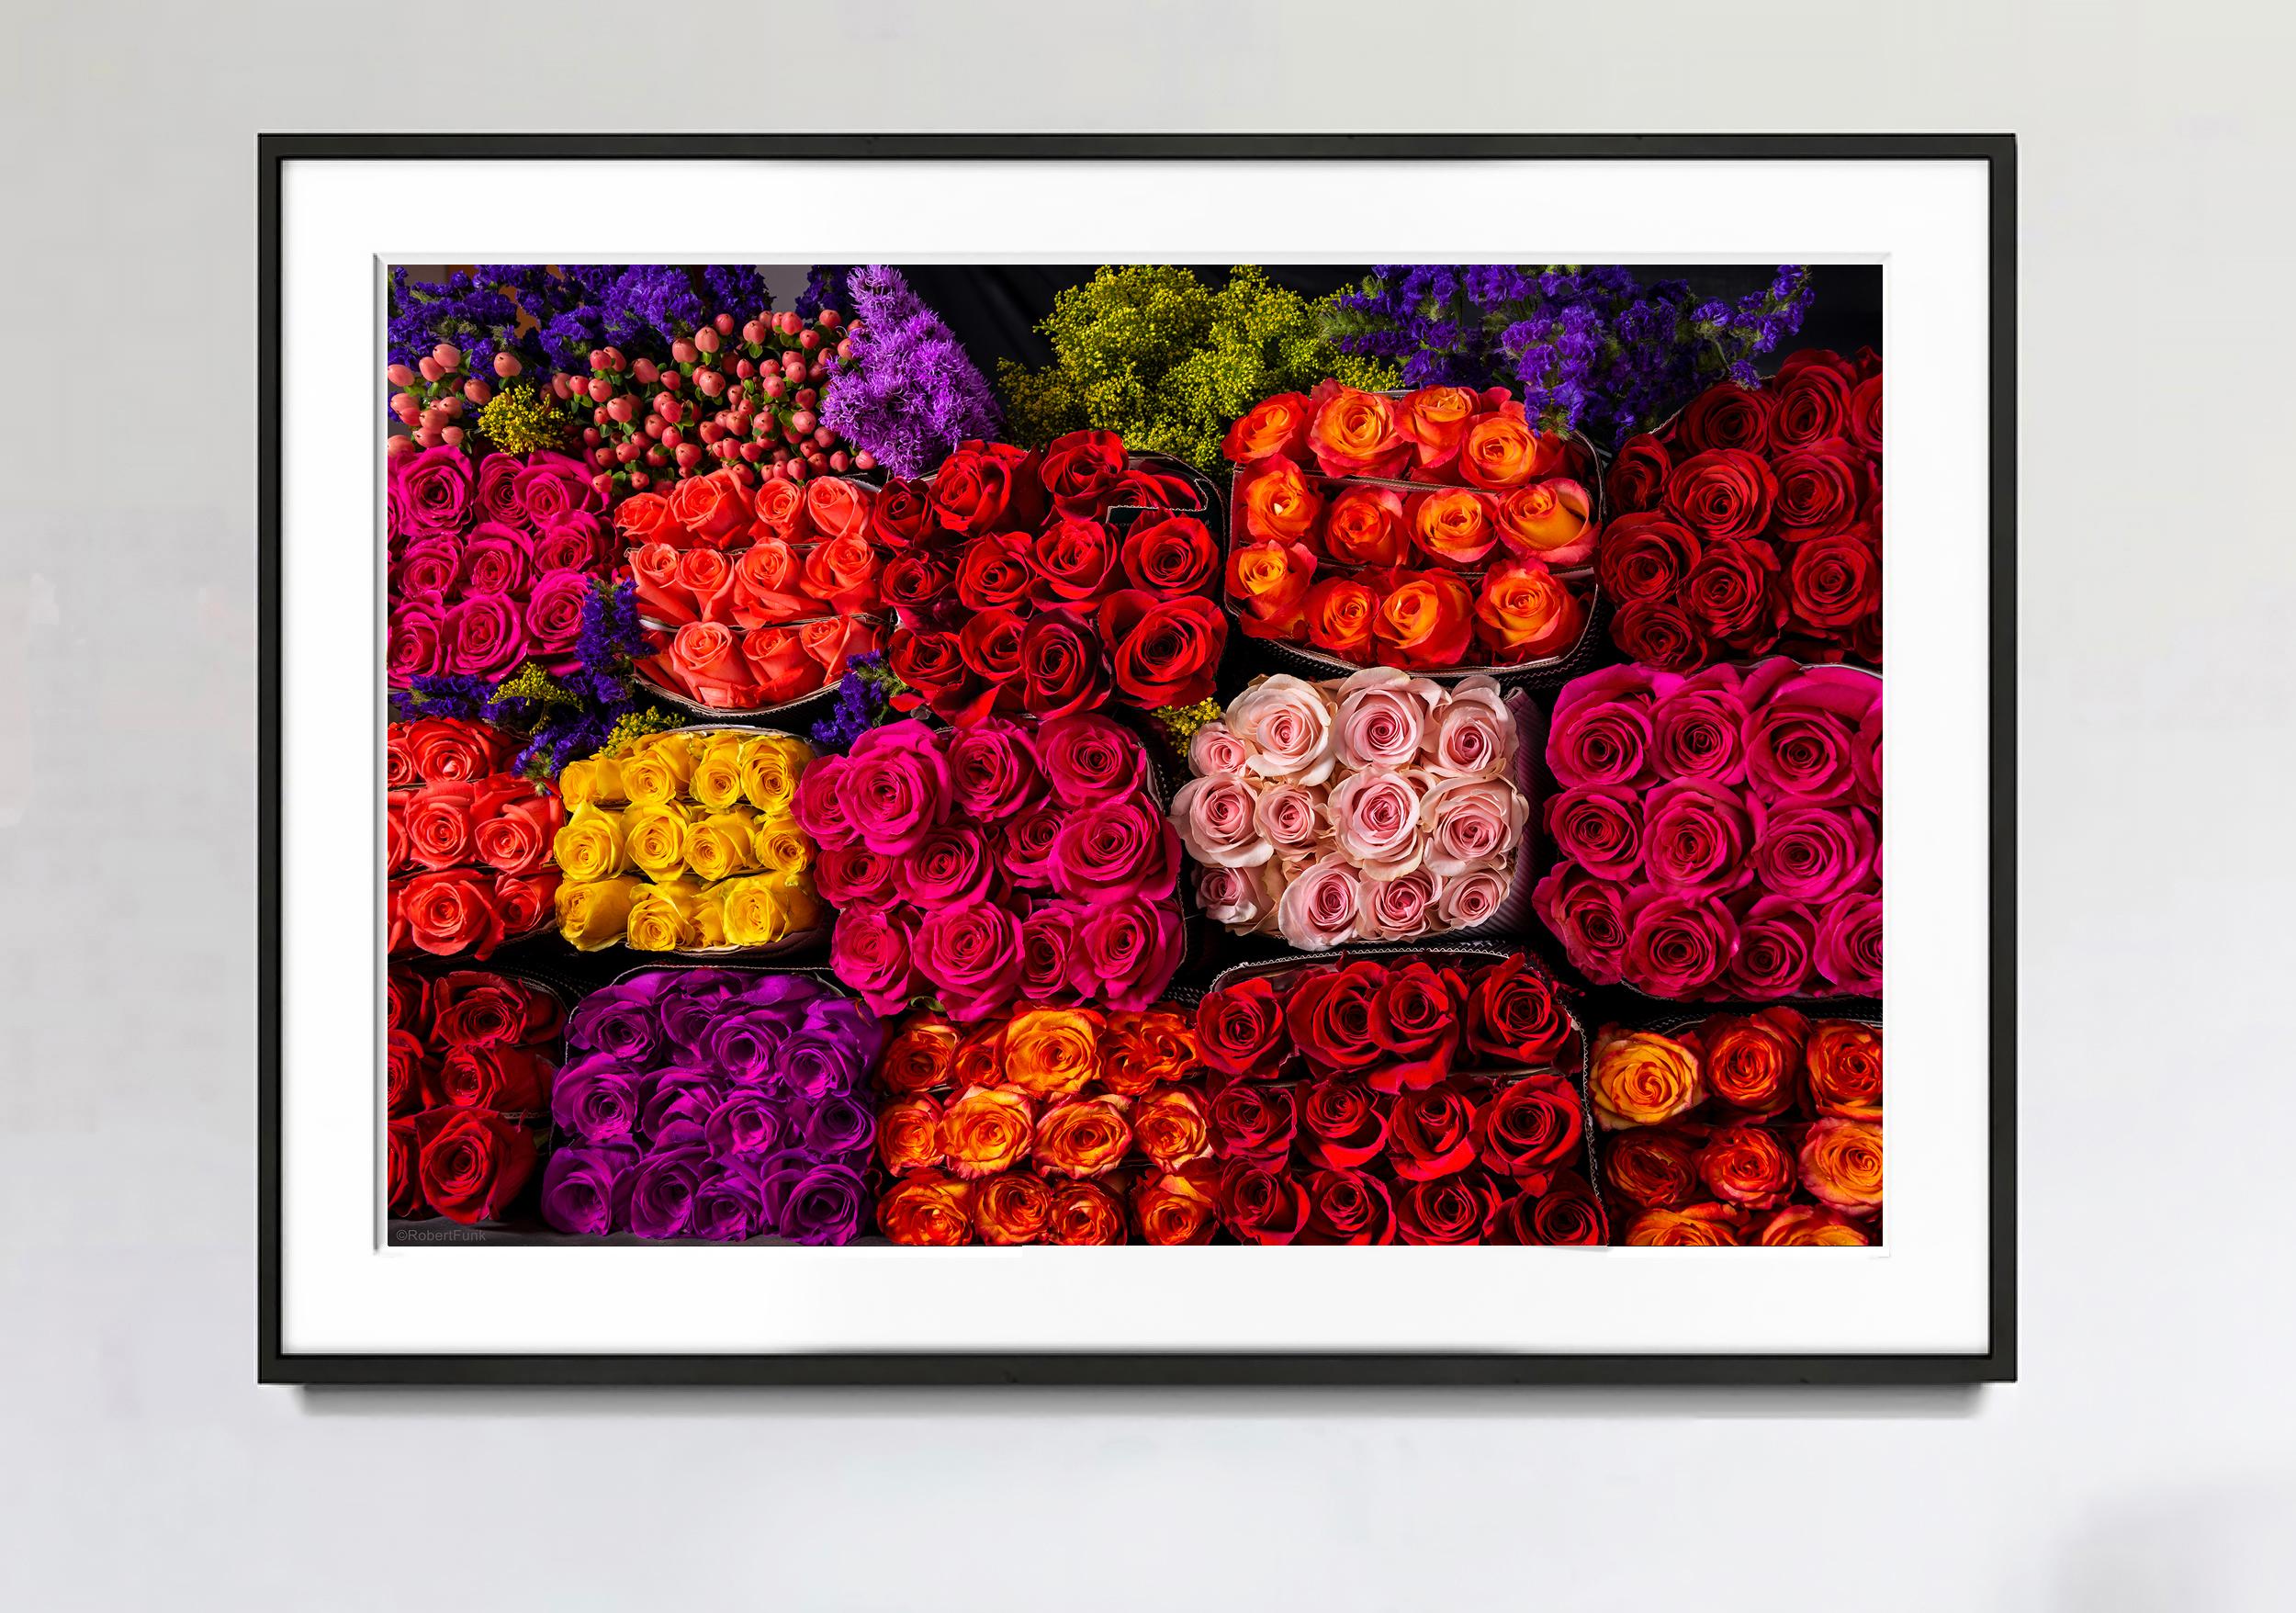 Trois cents et soixante roses et rouges violettes,  Power de la fleur  - Photograph de Robert Funk